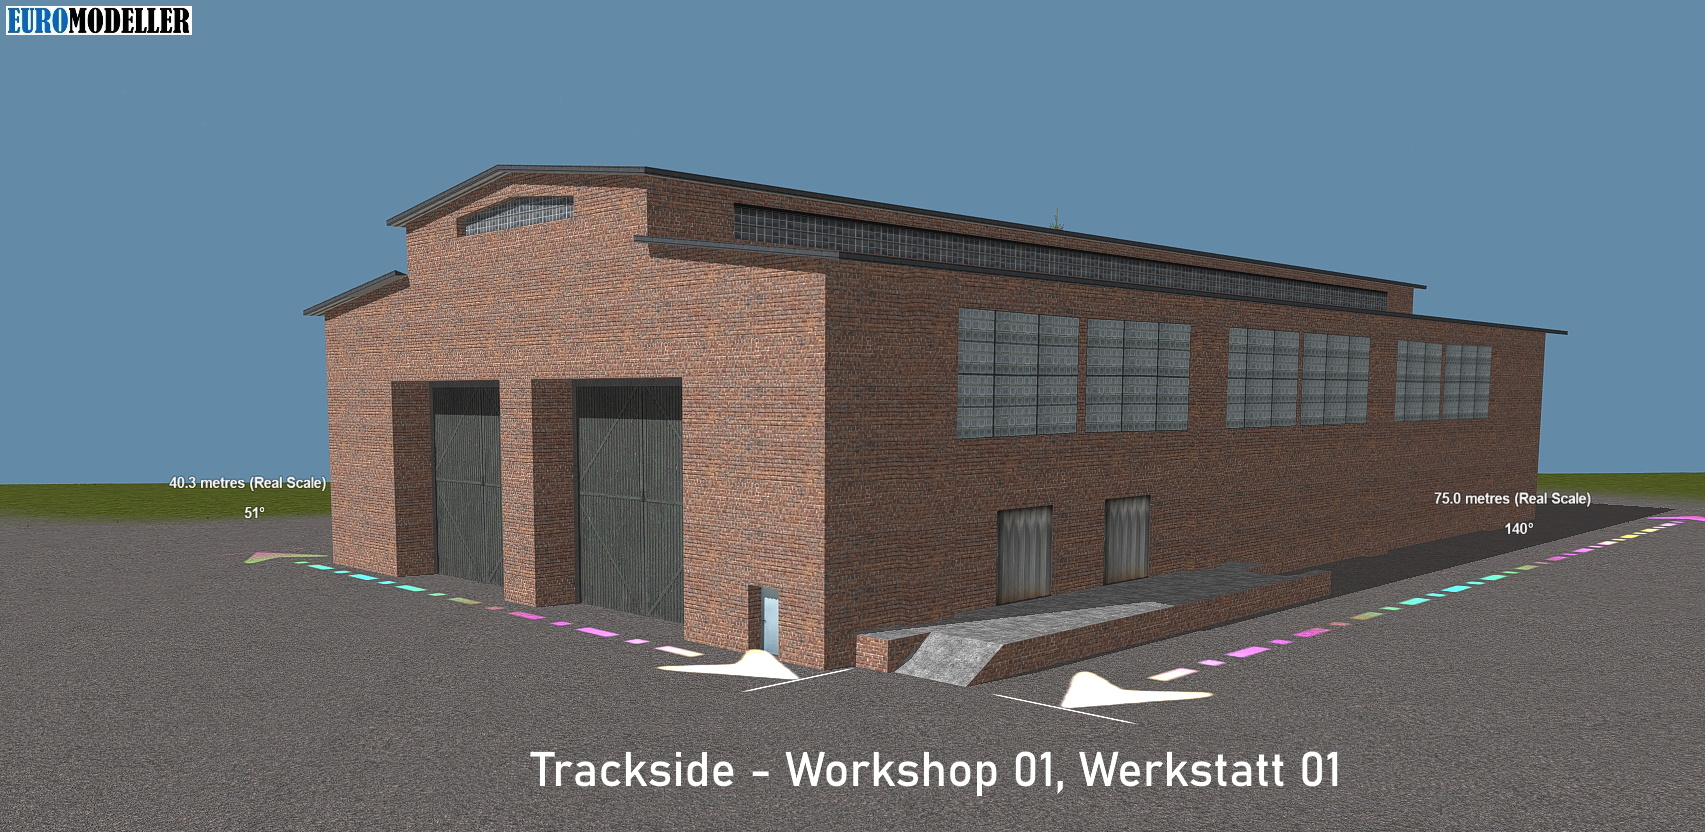 Trackside- Workshop 01, Werkstatt 01